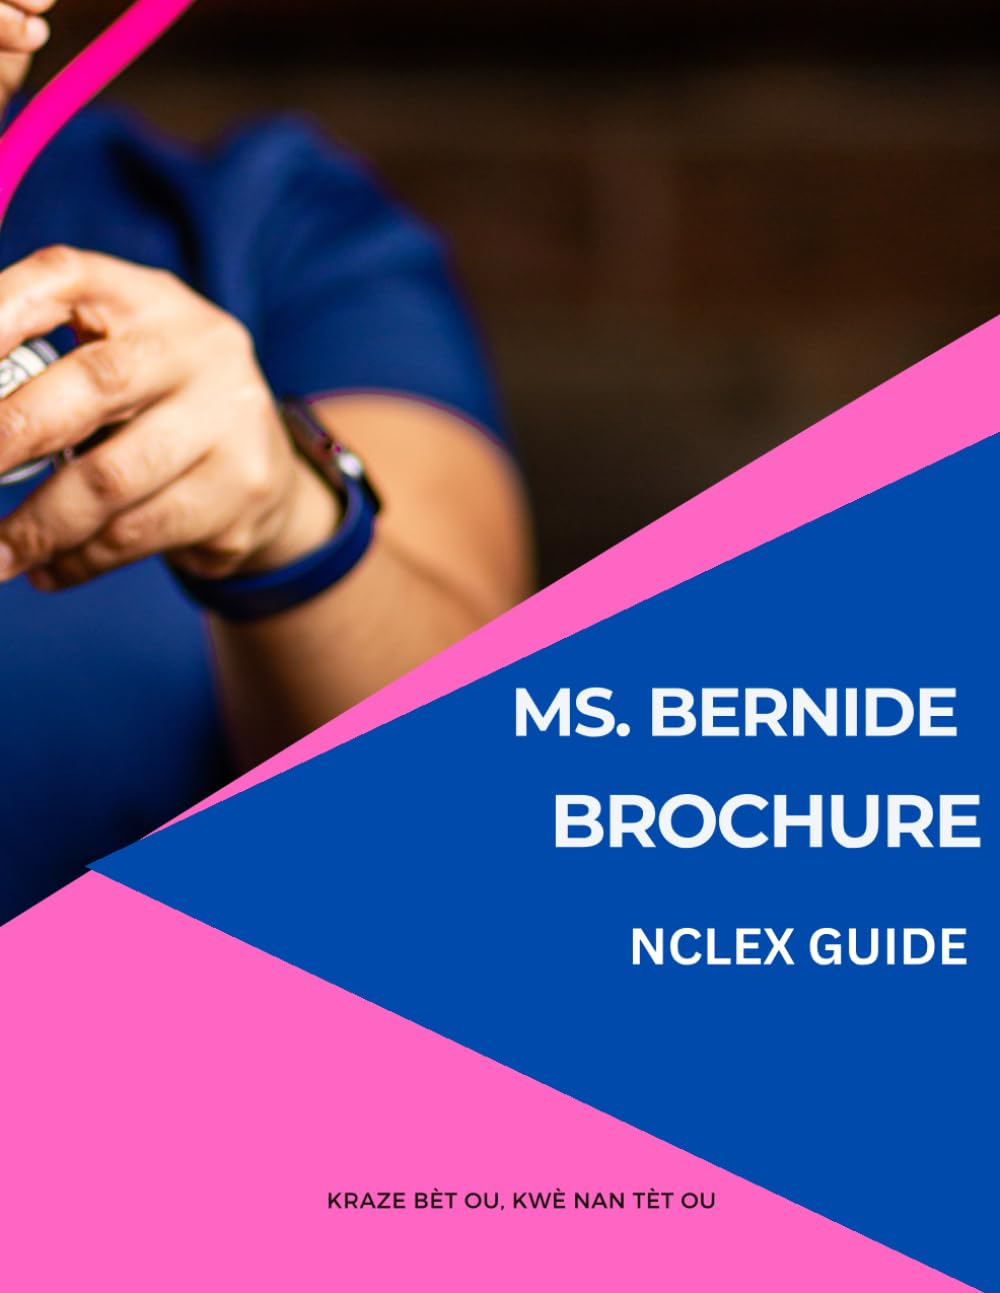 Ms Bernide Brochure: NCLEX Guide